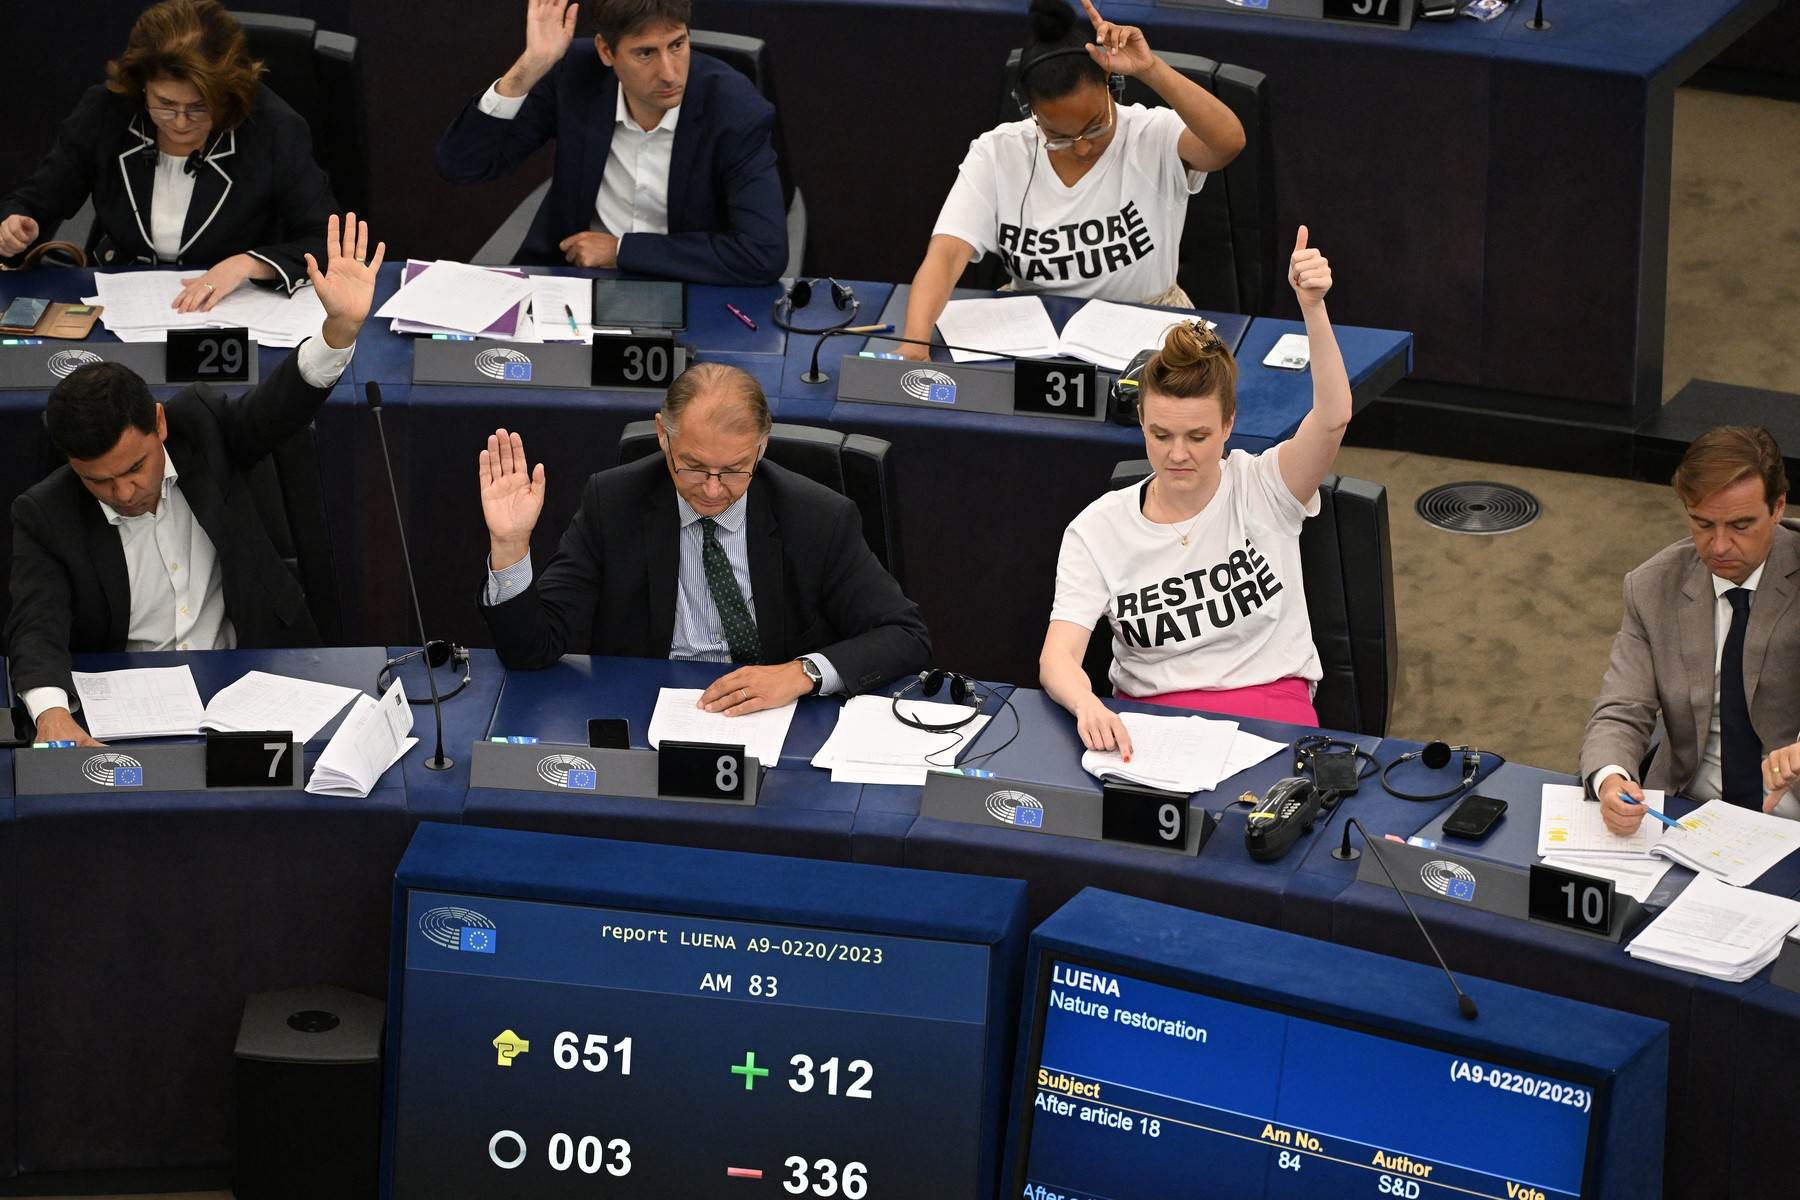  Europski parlament_glasanje 